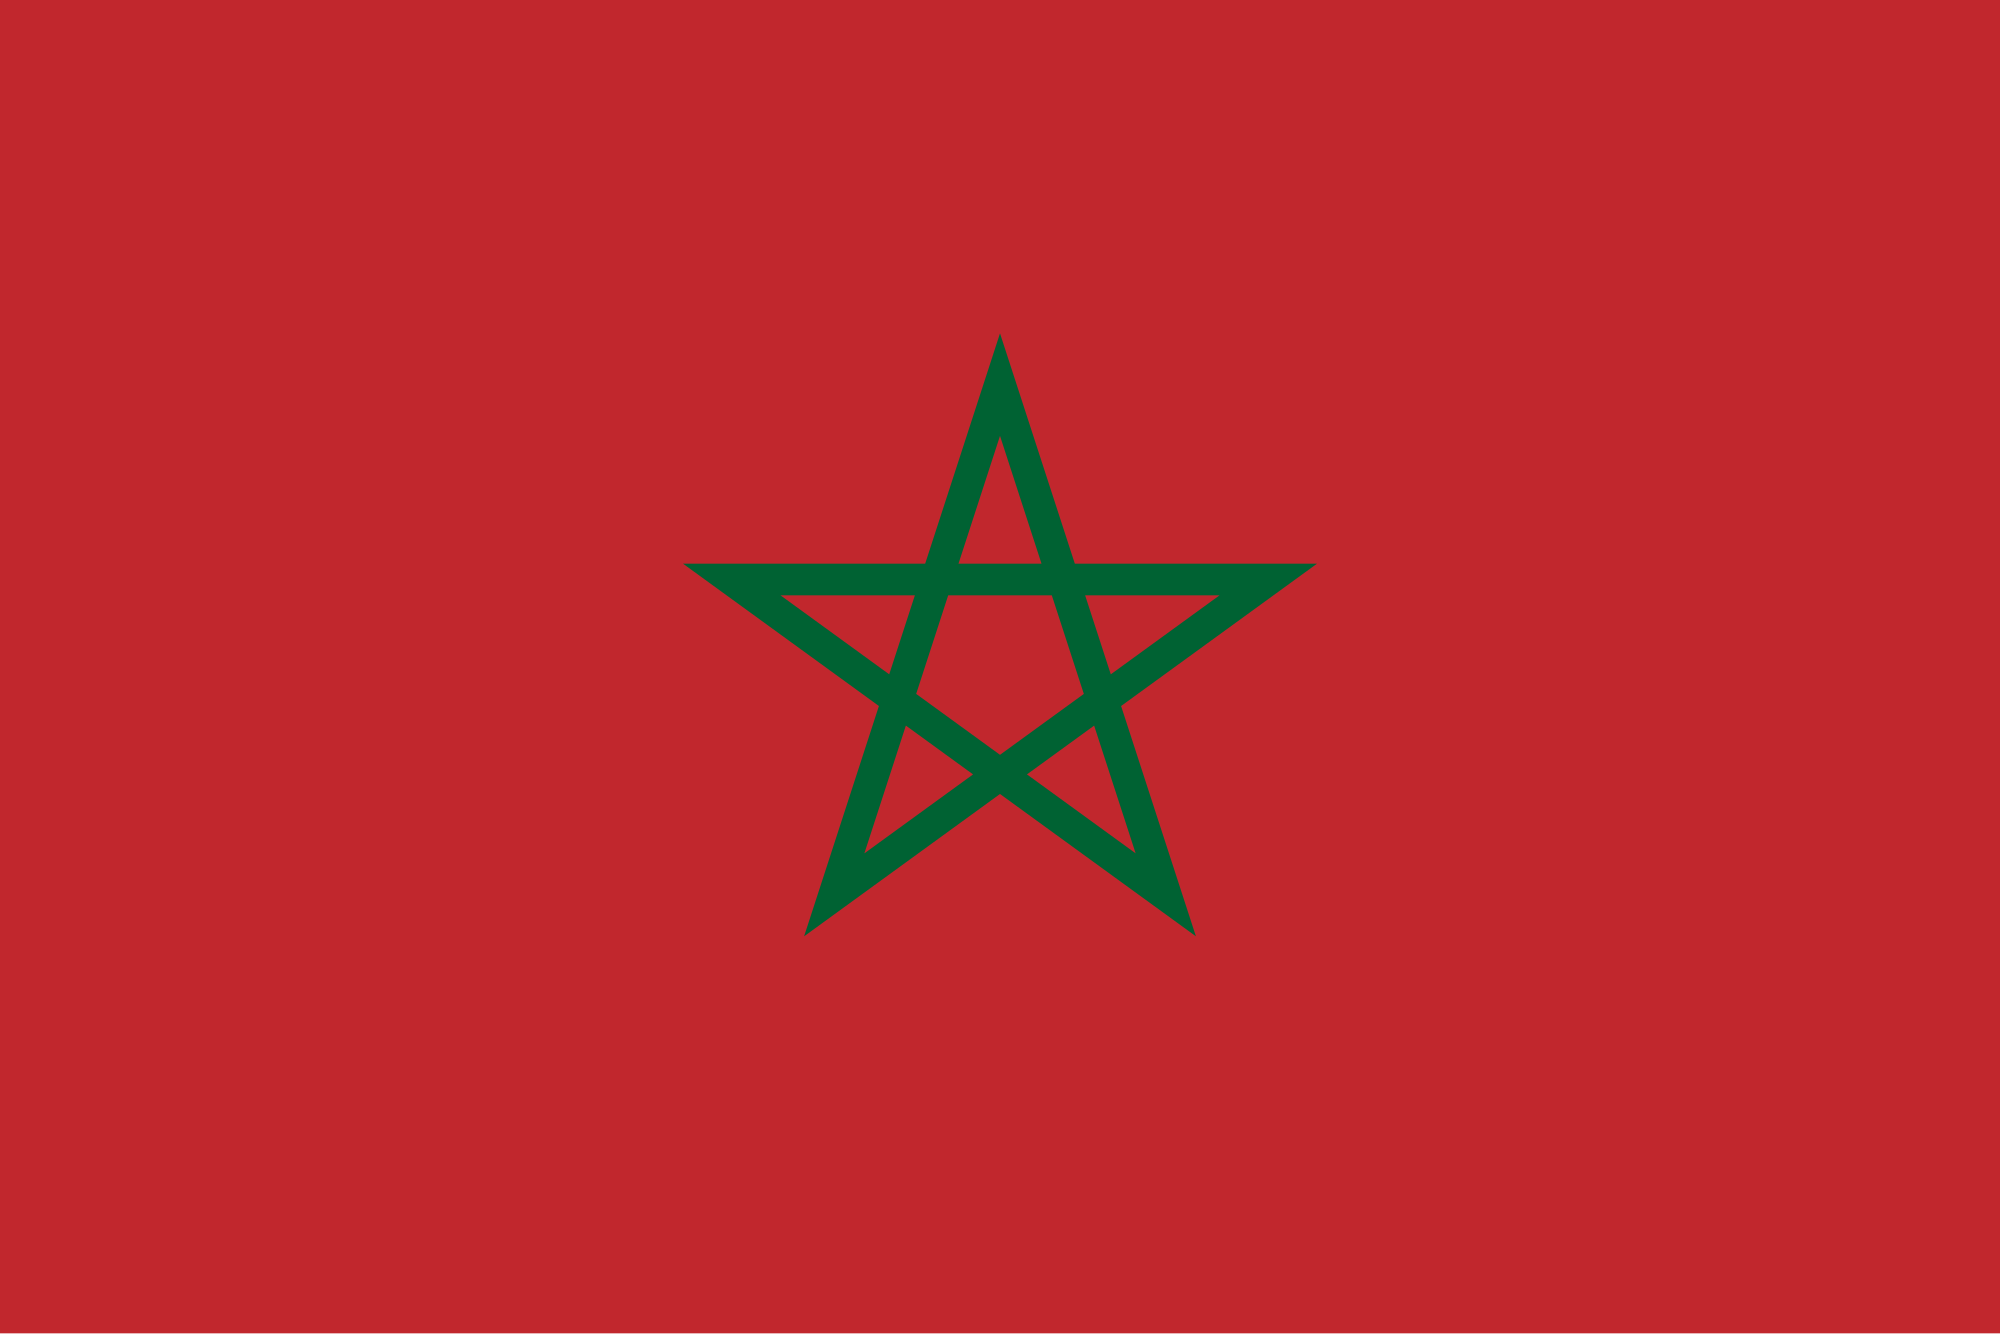 Bandiera del Marocco, la bandiera del Marocco, Marocco significato